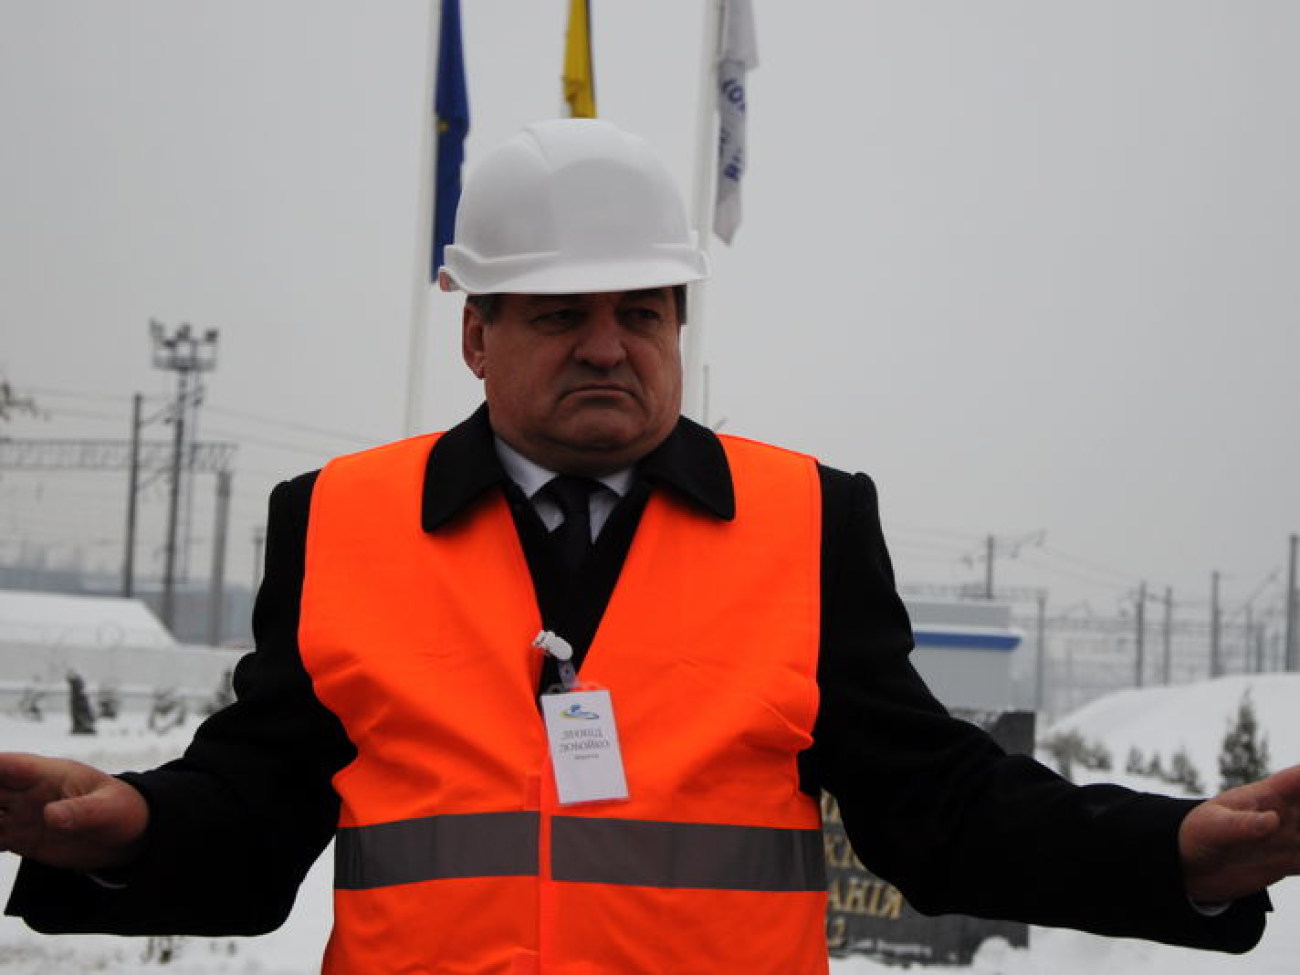 Станция по обслуживанию скоростных электропоездов «Дарница» открыла двери для СМИ, 31 января 2013г.